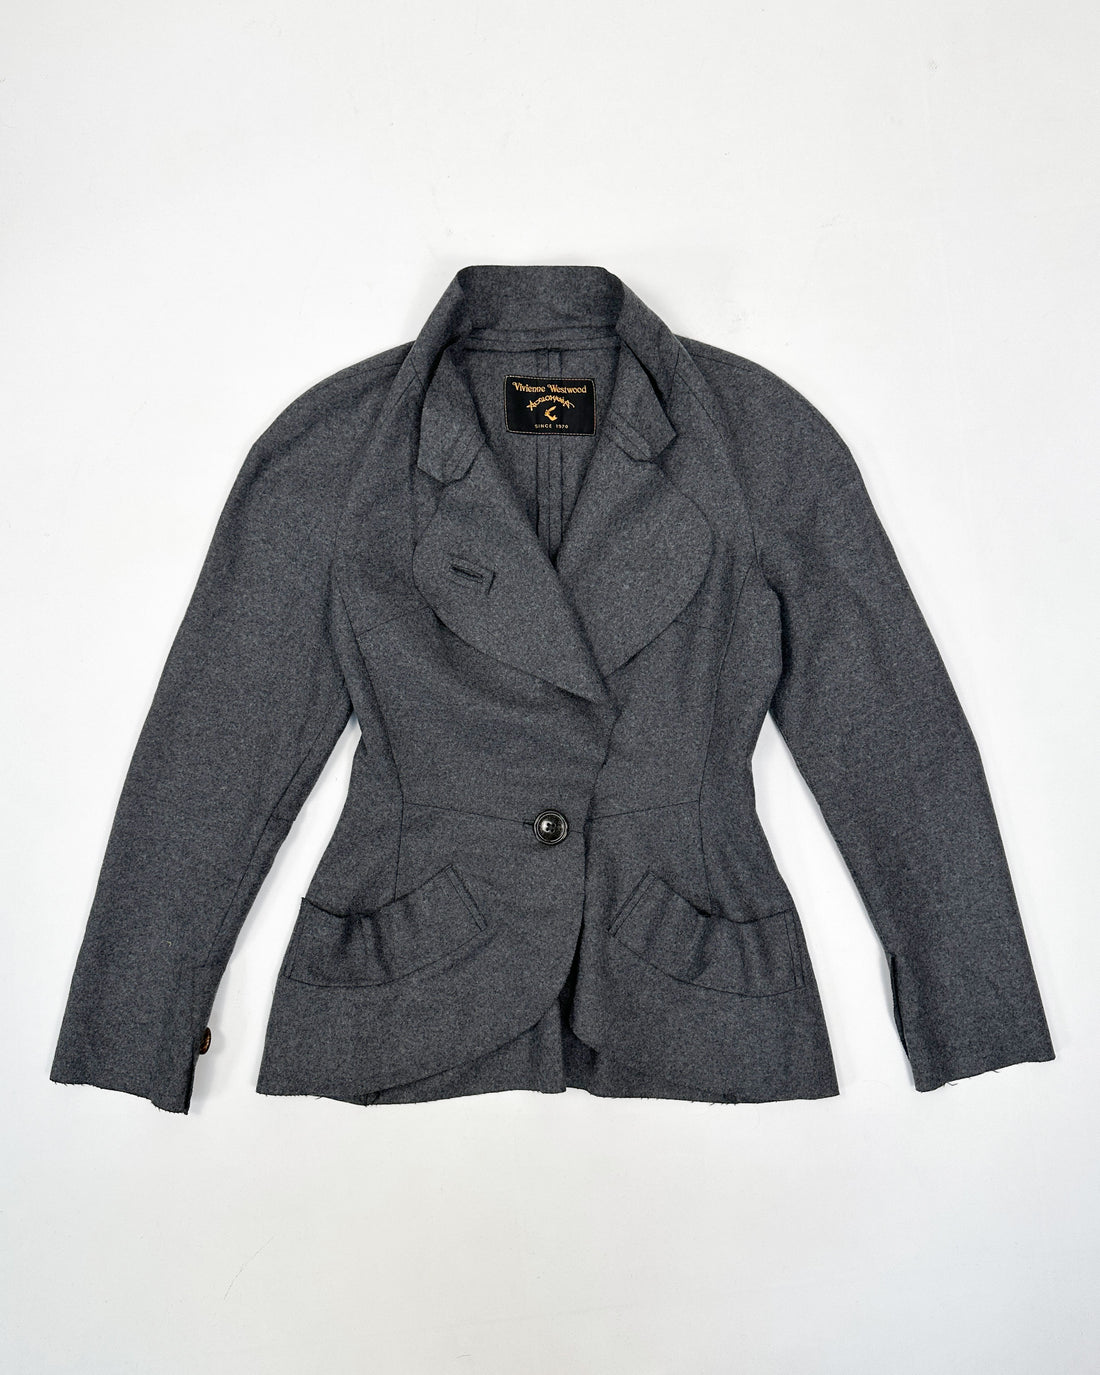 Vivienne Westwood Wool Grey Asymmetric Jacket 1900's